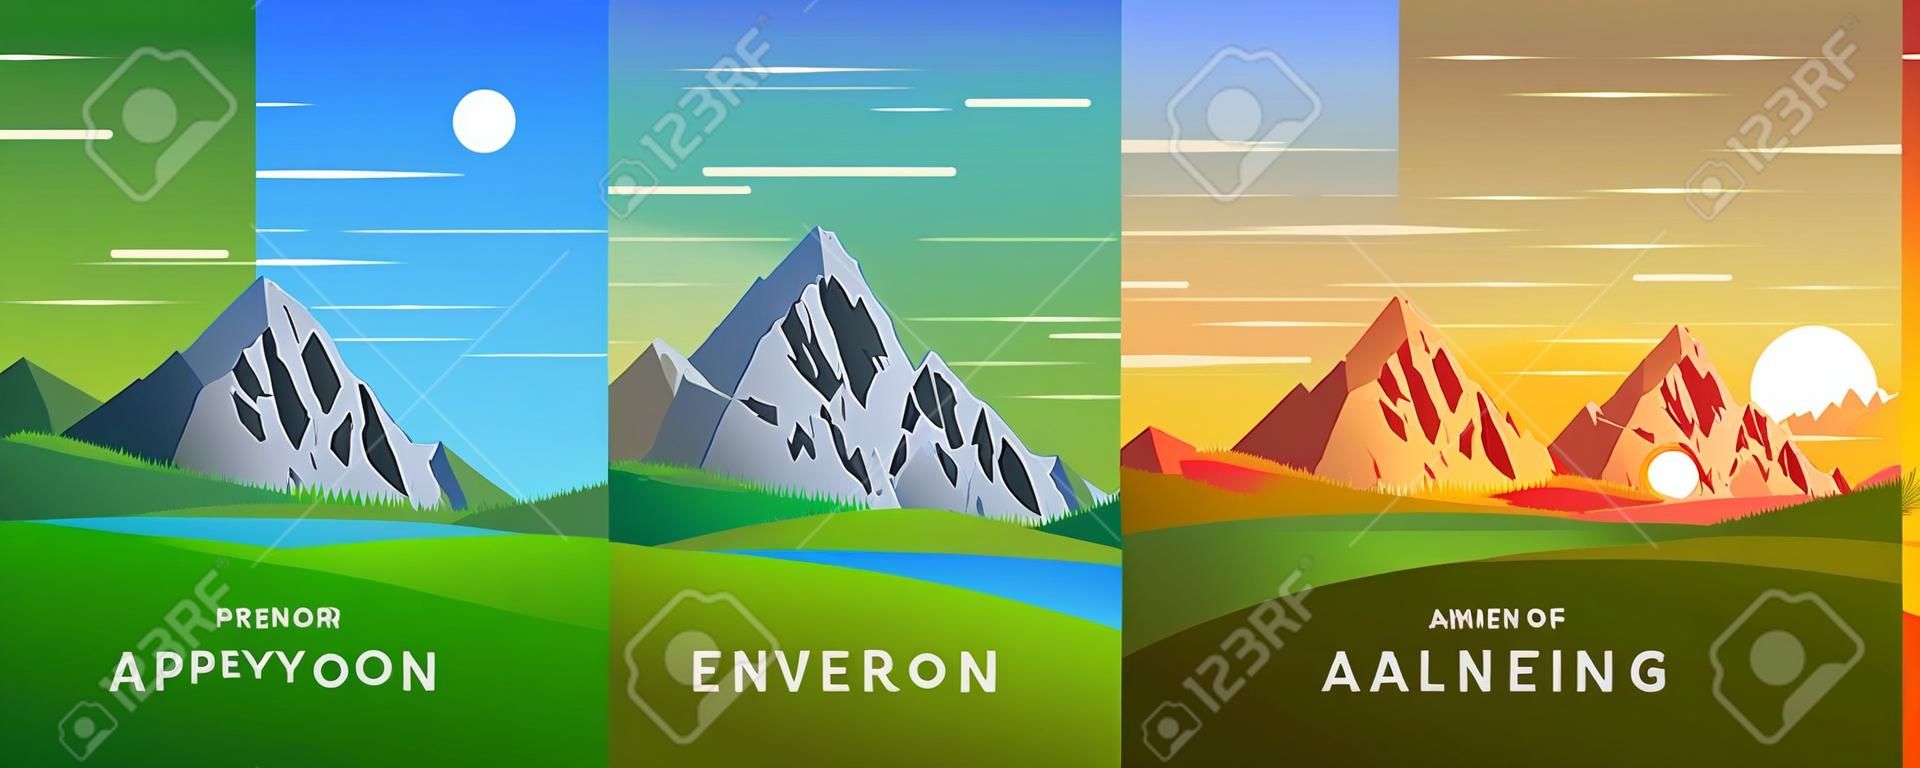 Conjunto de quatro vectores de fundo dos tempos do dia. Bela paisagem de montanha com céu colorido. Fundo em estilo de desenho animado plano - ilustração de paisagem poligonal. Cores brilhantes.